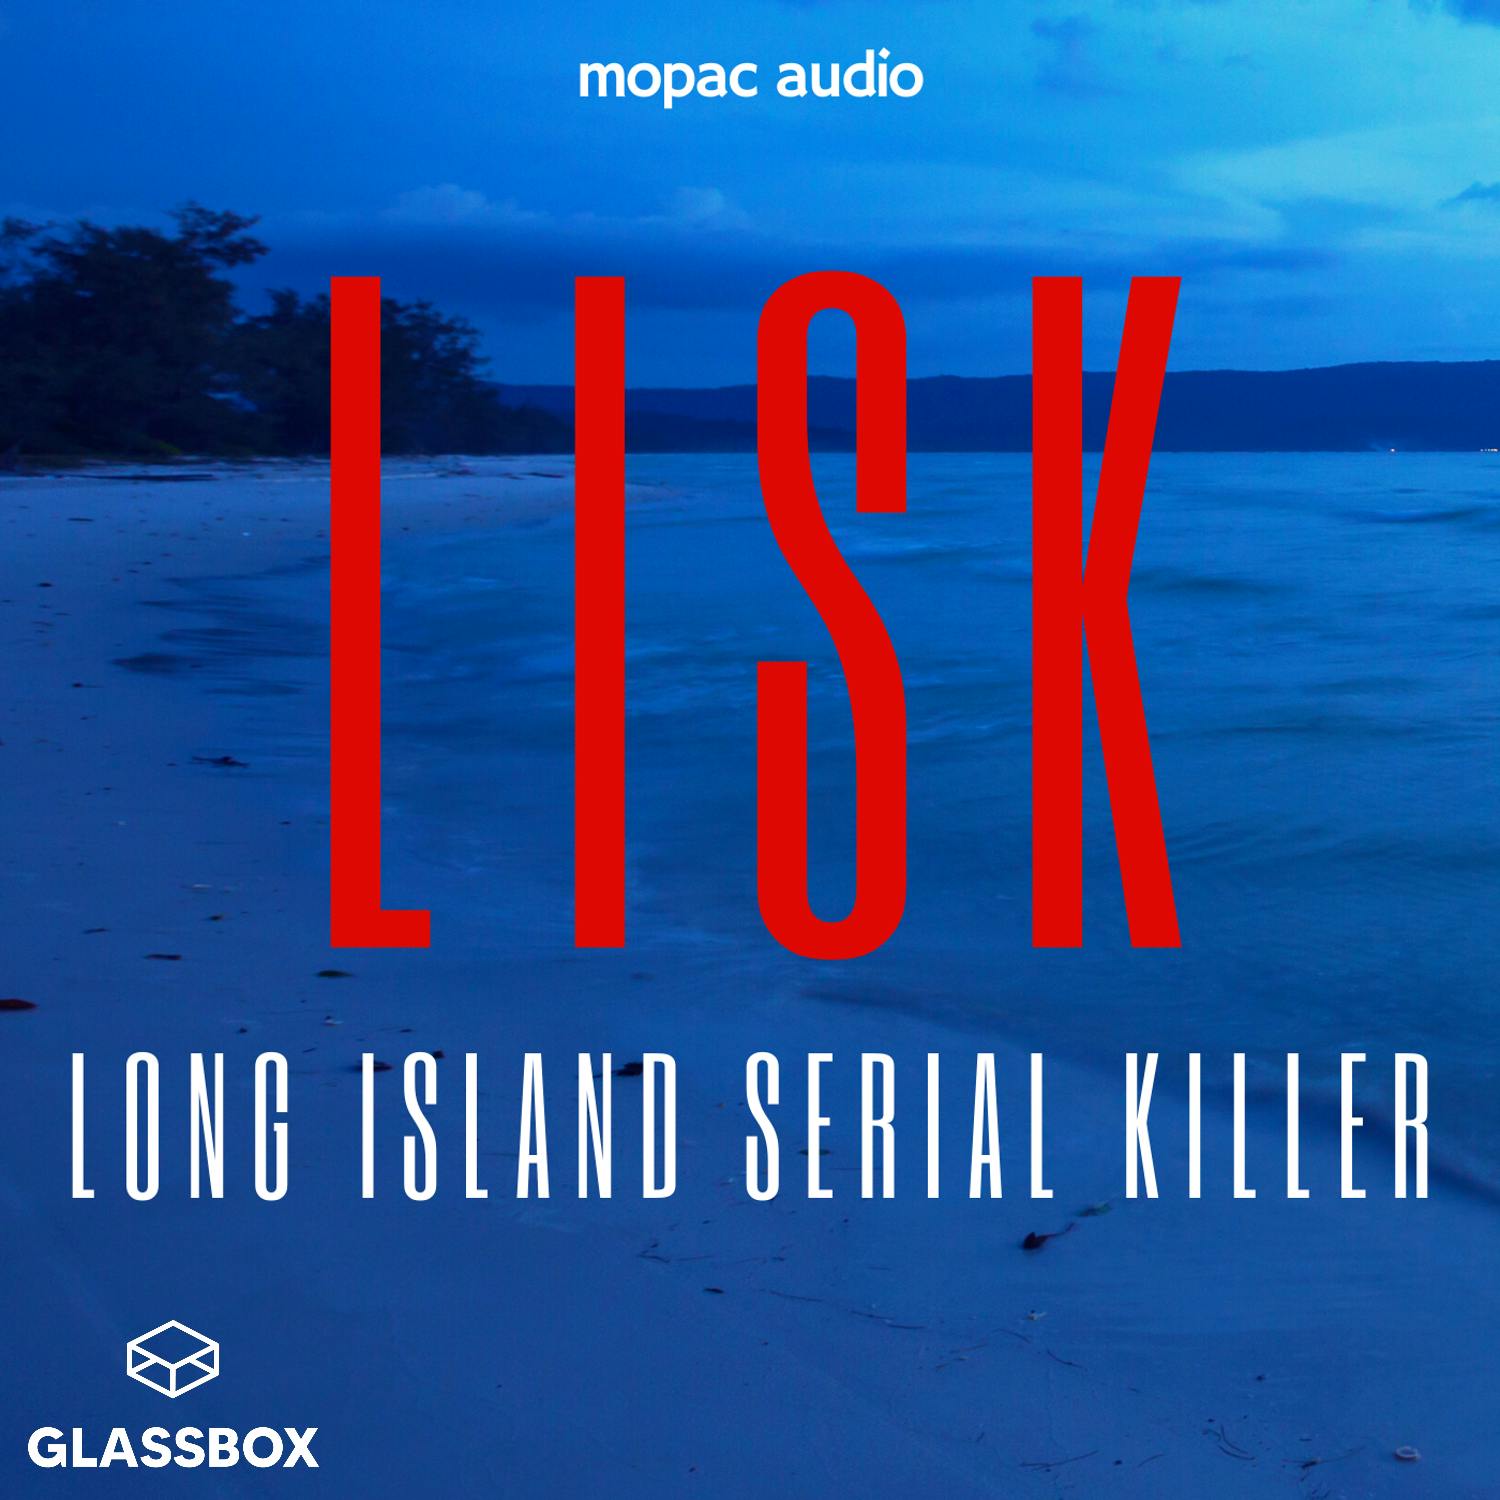 LISK: Long Island Serial Killer